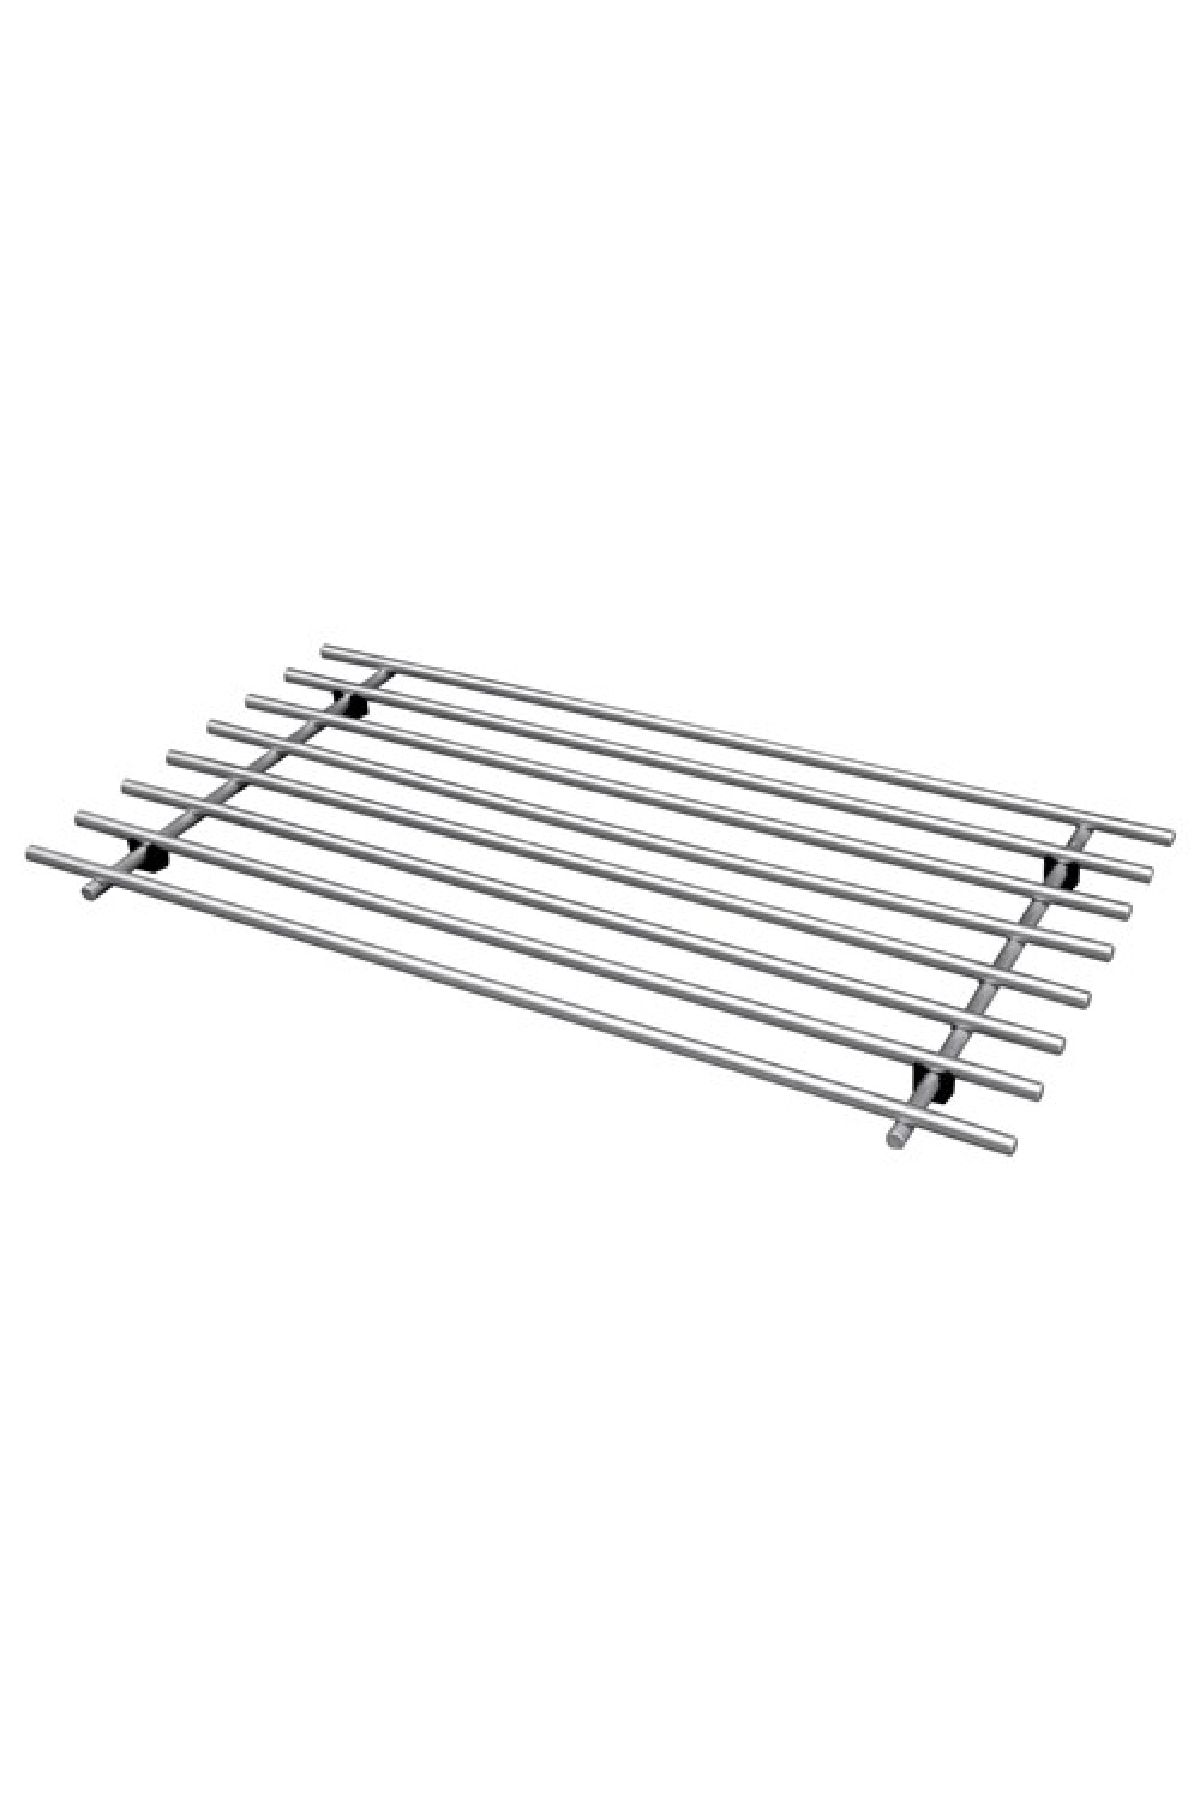 IKEA Paslanmaz Çelik Nihale Trendexpress Büyük Boy 50x28 Cm